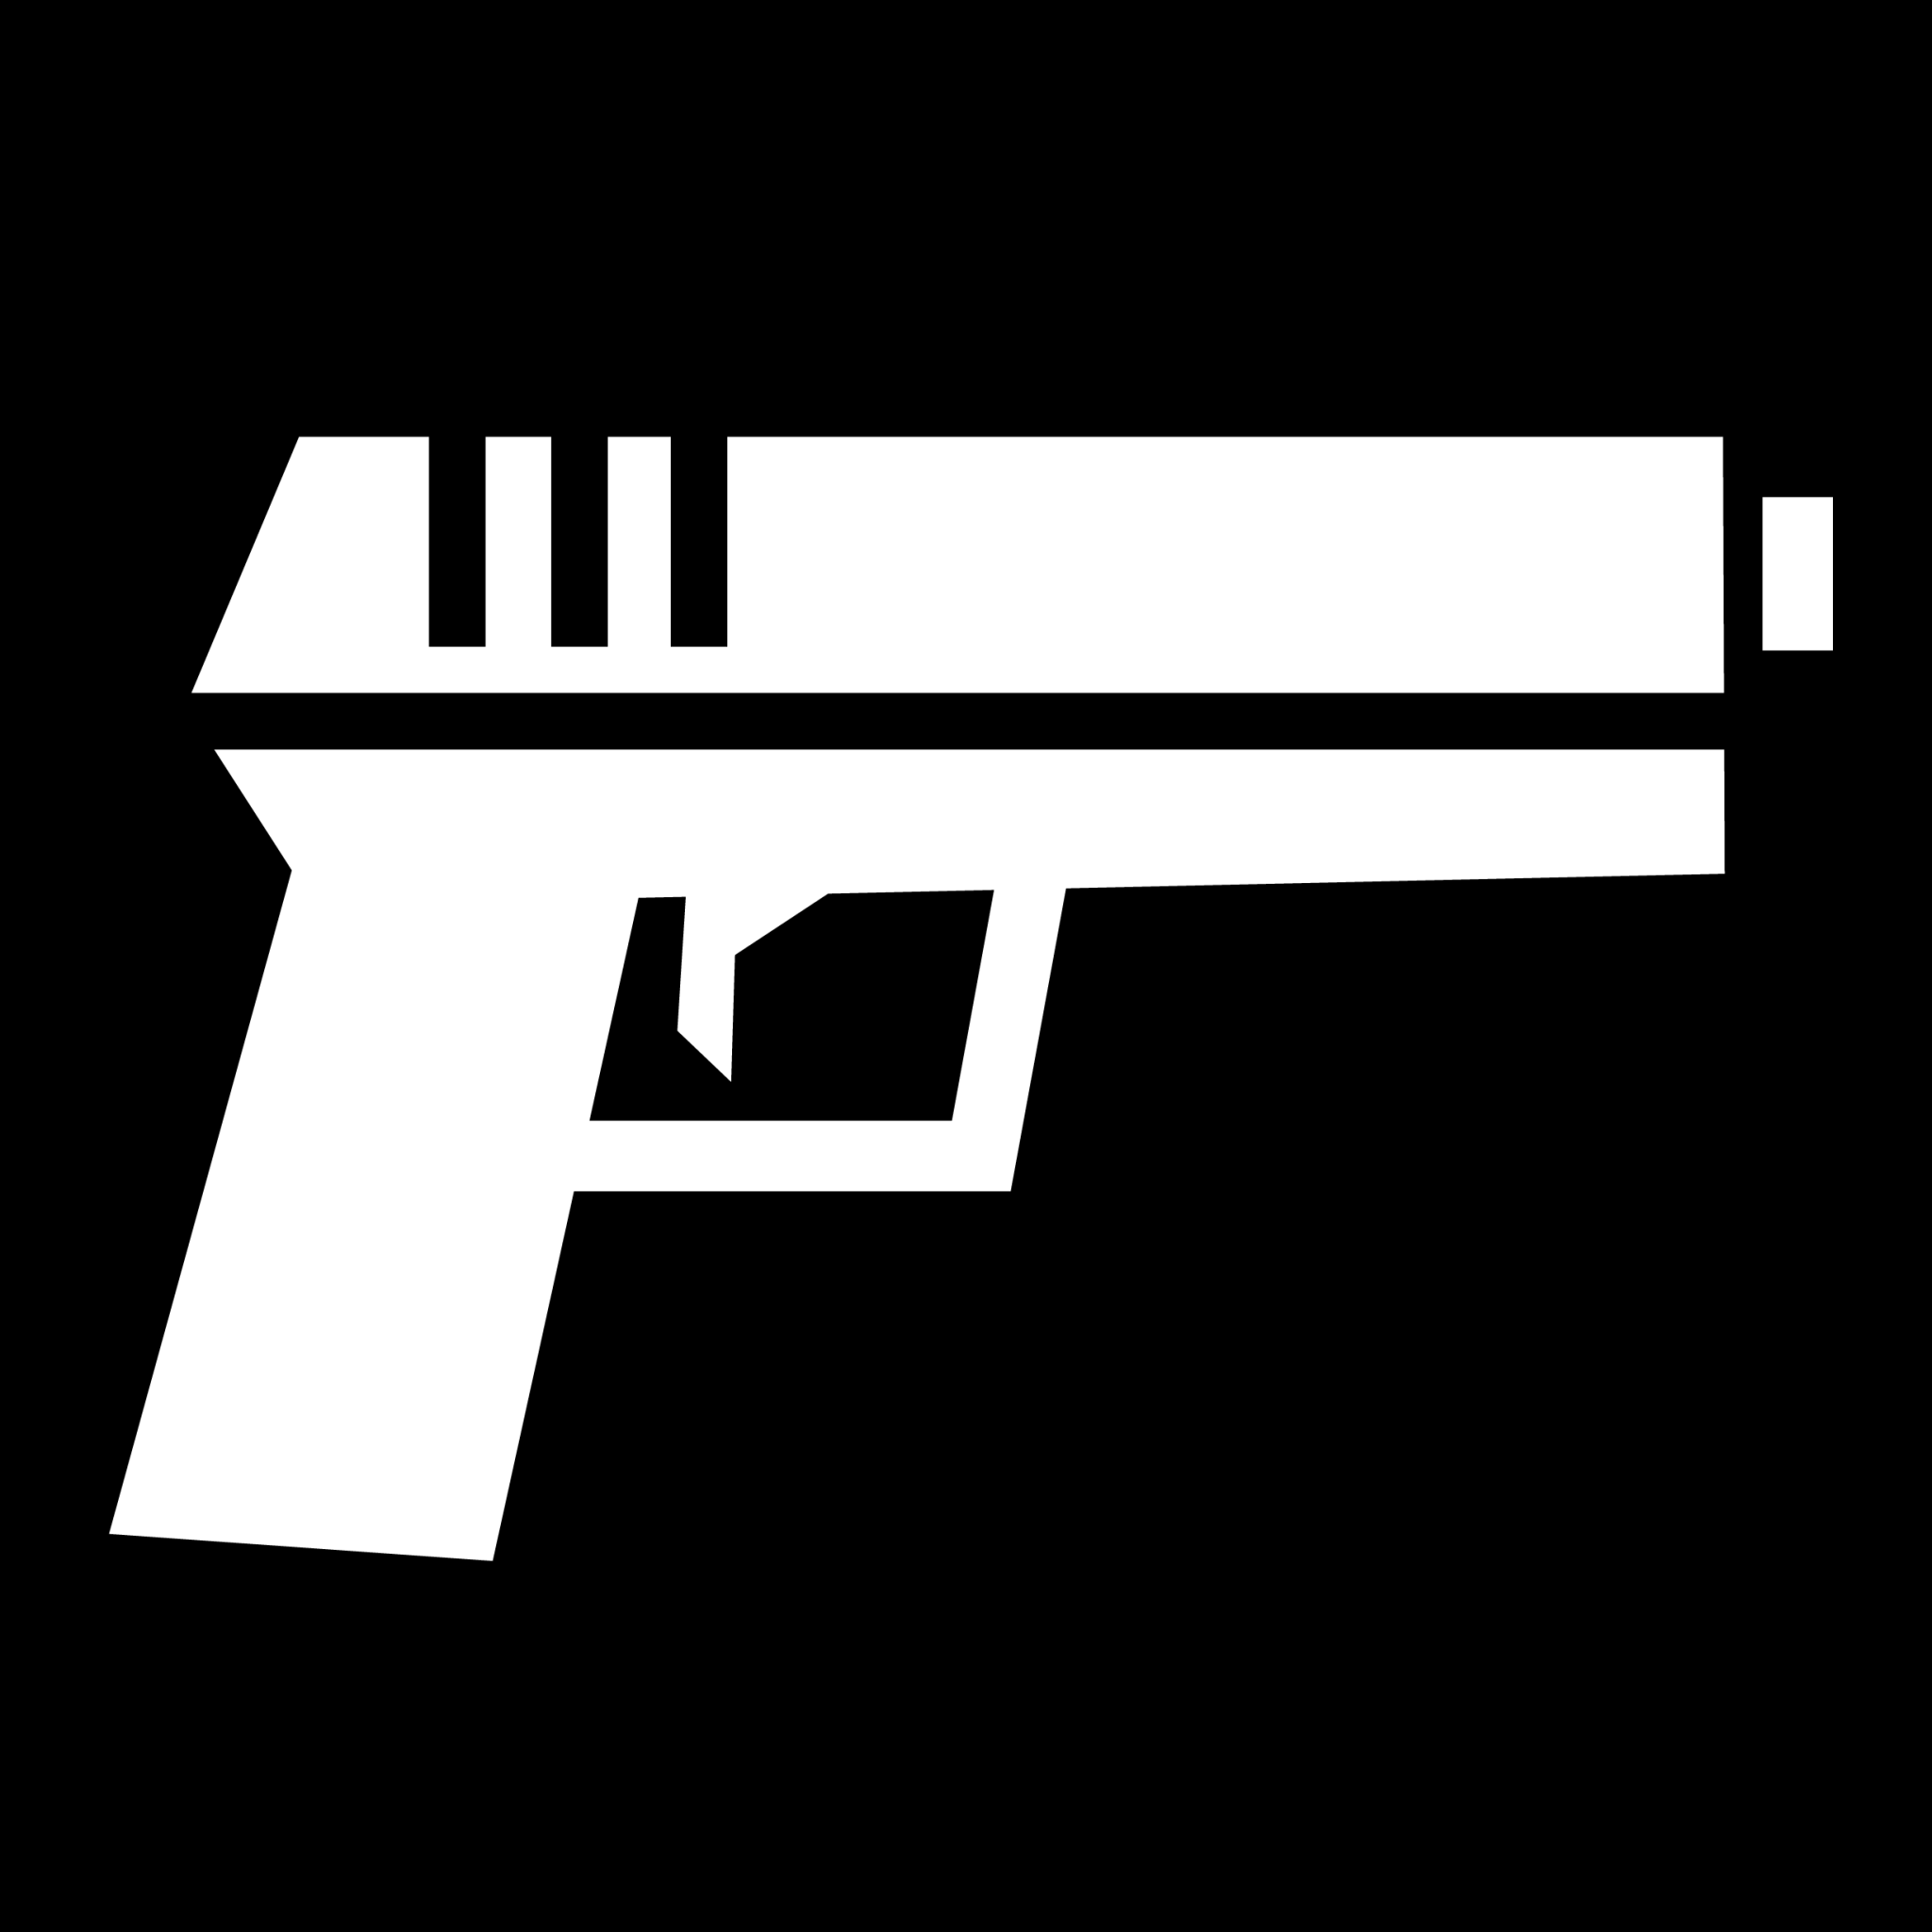 gun icon png